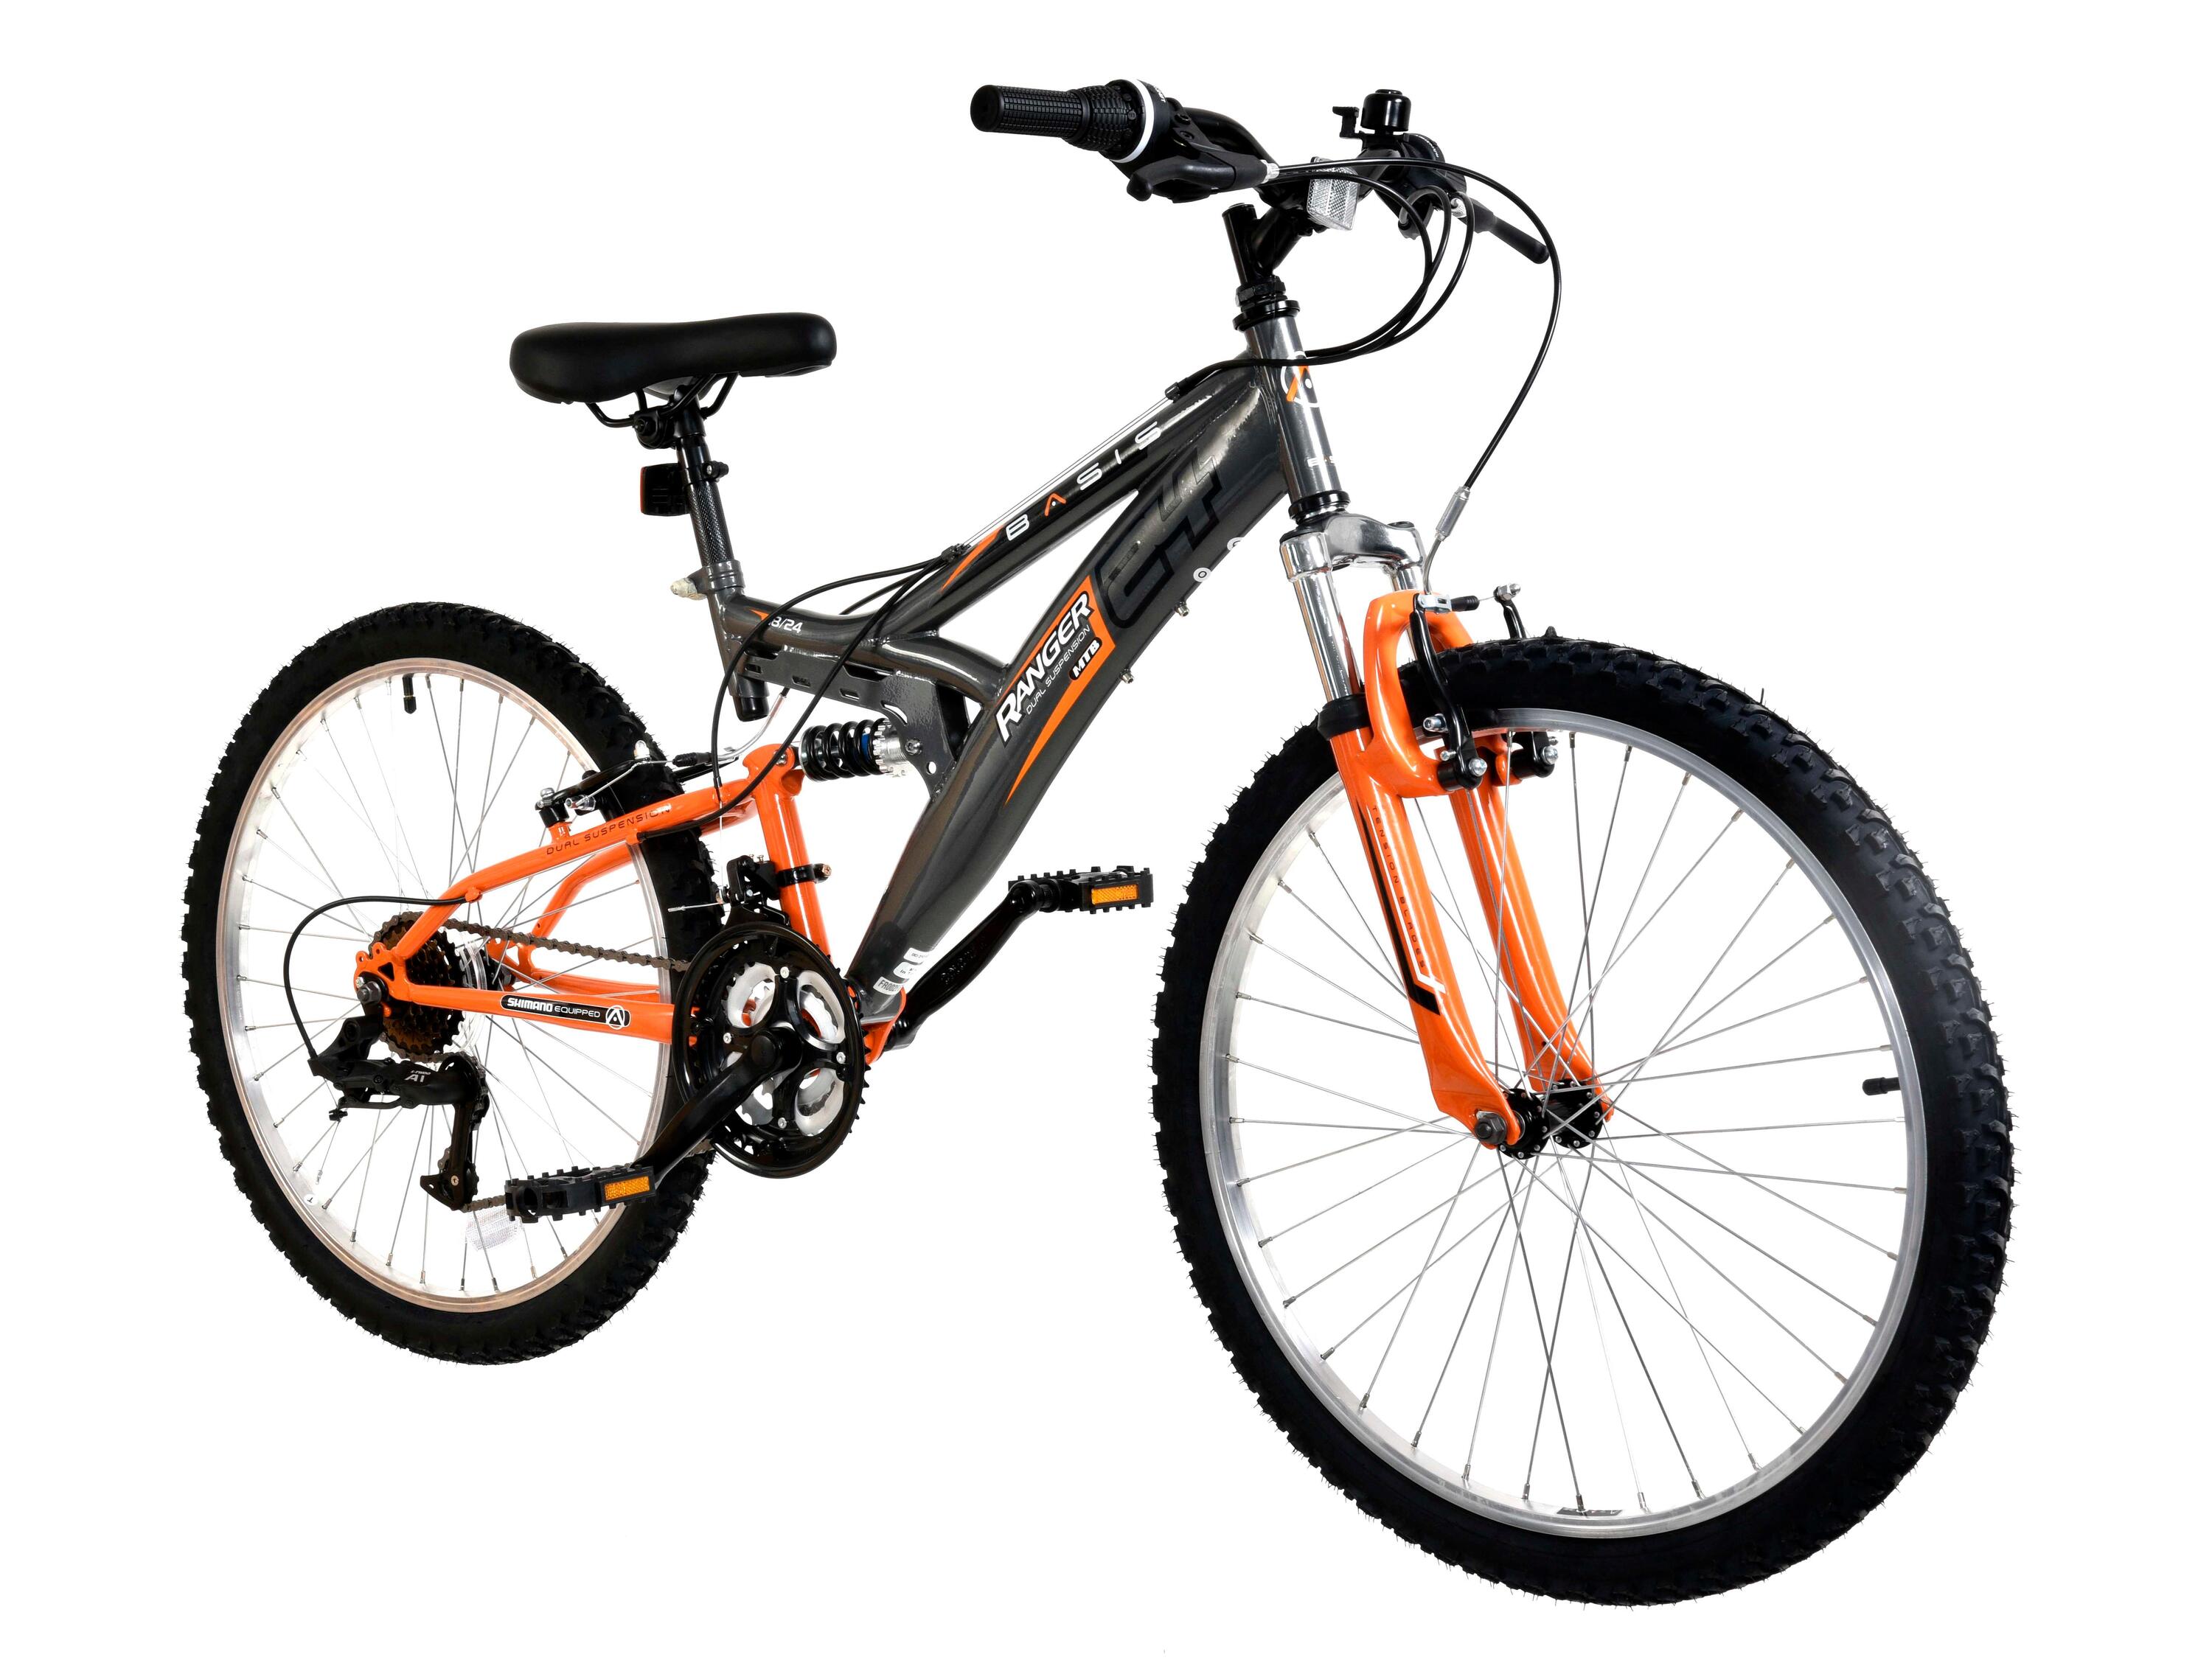 Basis Ranger Junior Full Suspension Mountain Bike, 24In Wheel - Grey/Orange 2/3